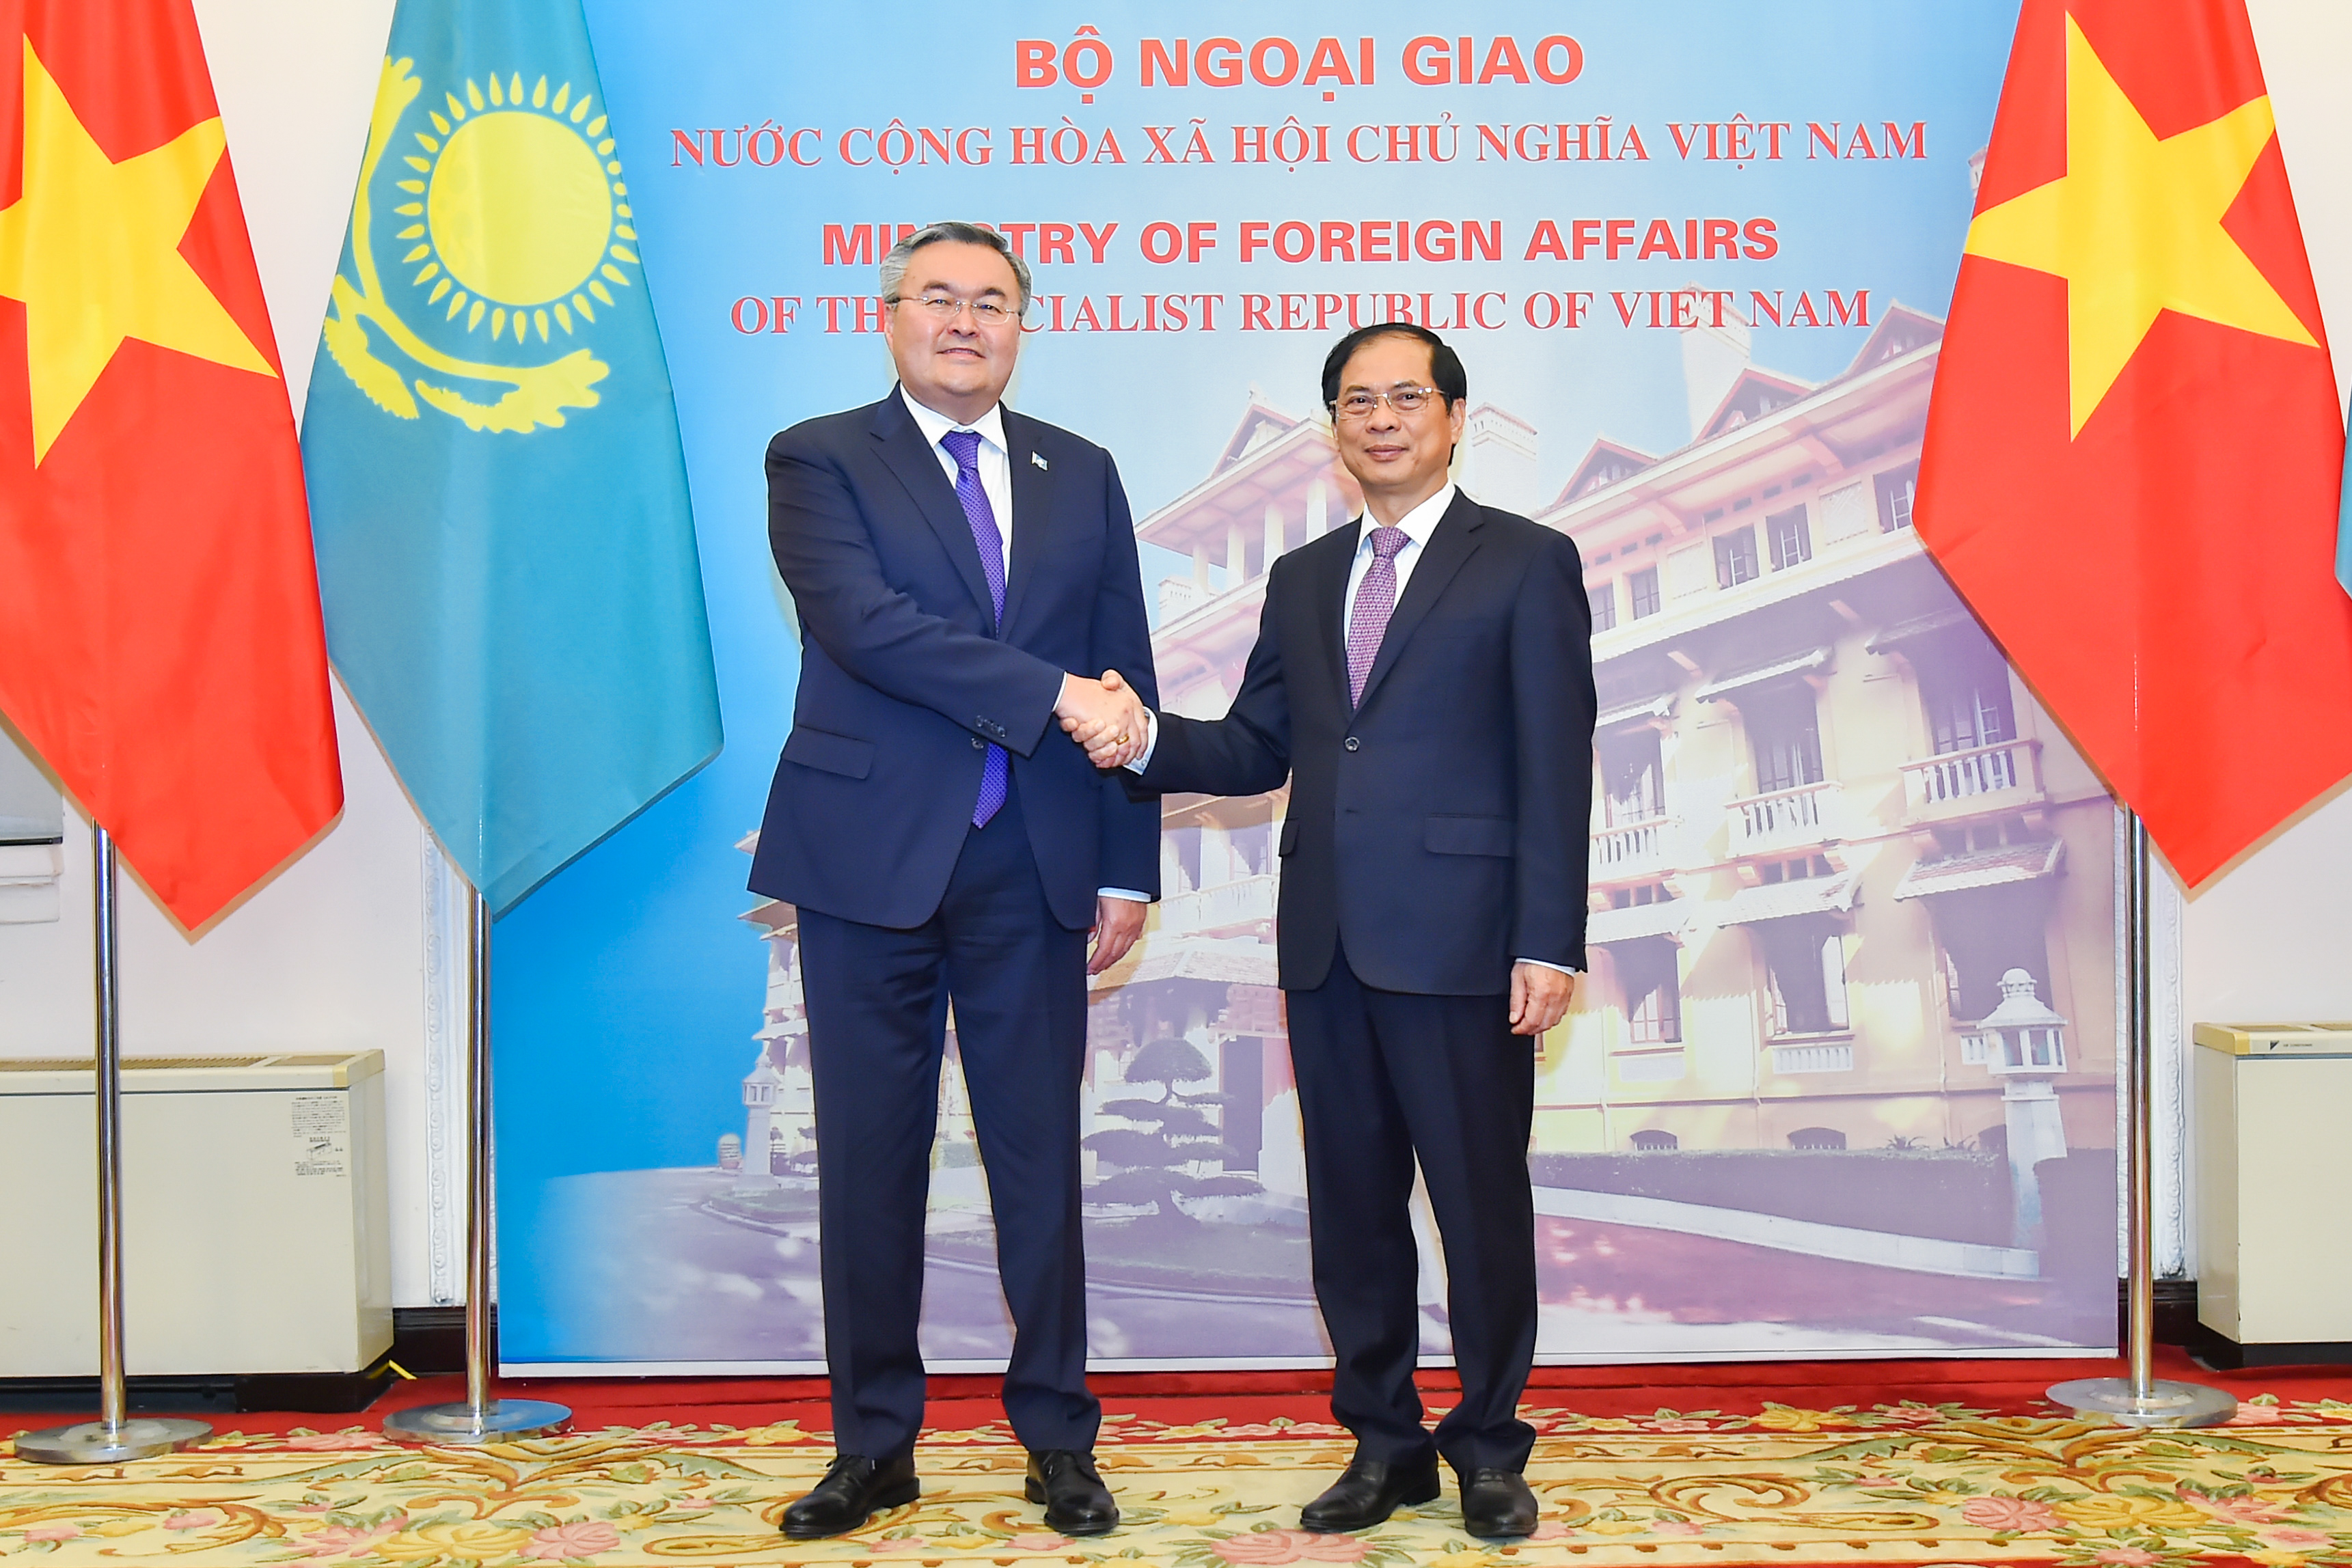 Об официальном визите Министра иностранных дел Казахстана во Вьетнам   